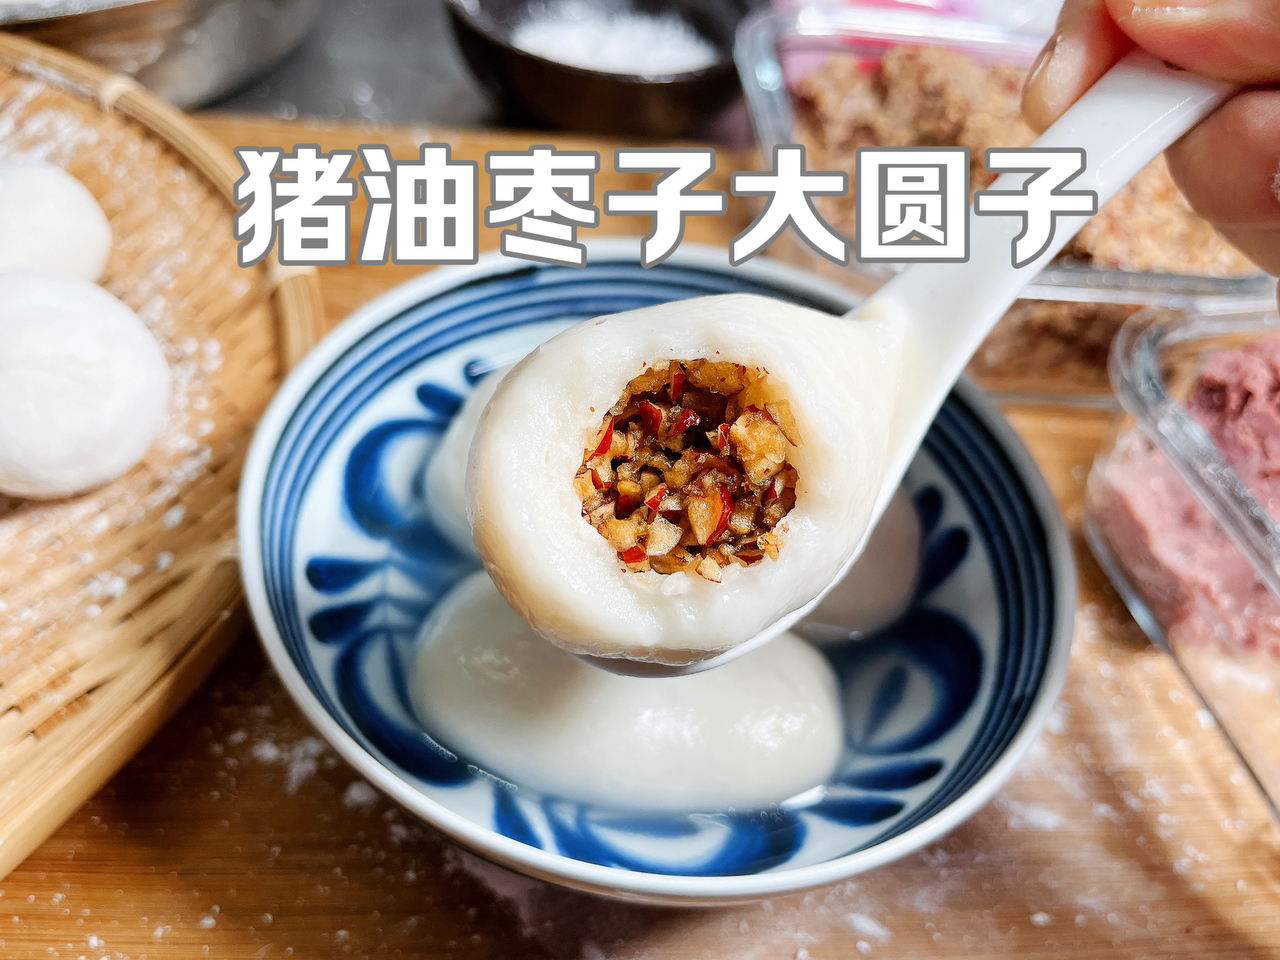 还原上海浦东本地猪油枣子馅大圆子记忆里的味道